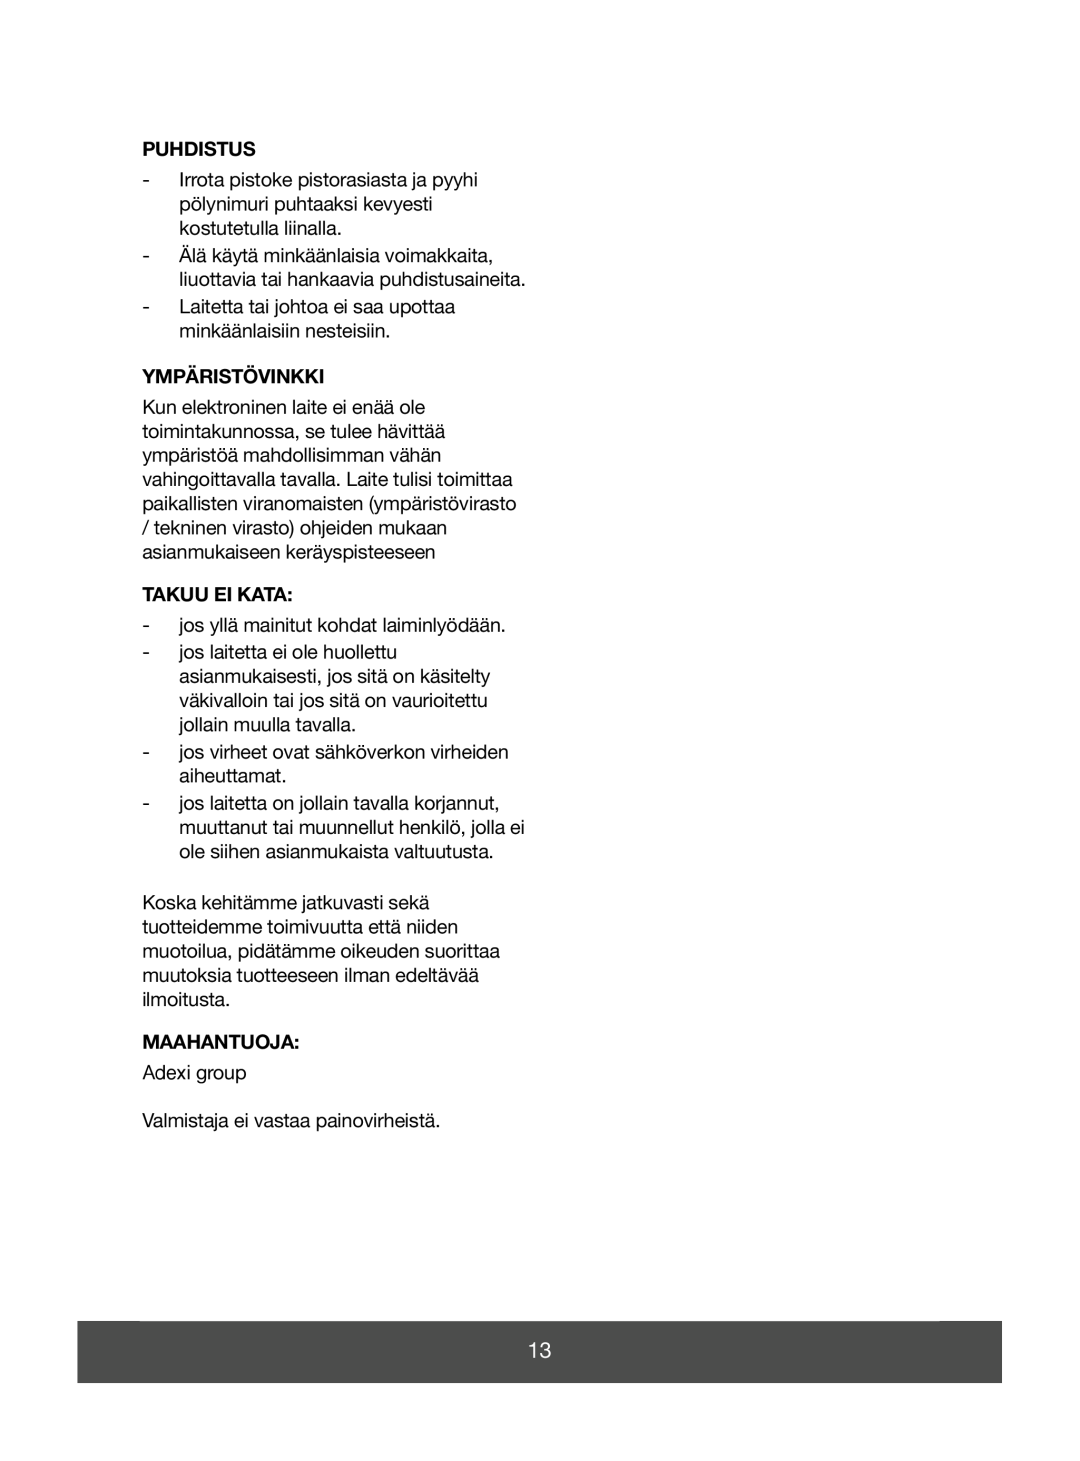 Melissa 640-056 manual Puhdistus, Ympäristövinkki, Takuu Ei Kata, Maahantuoja 